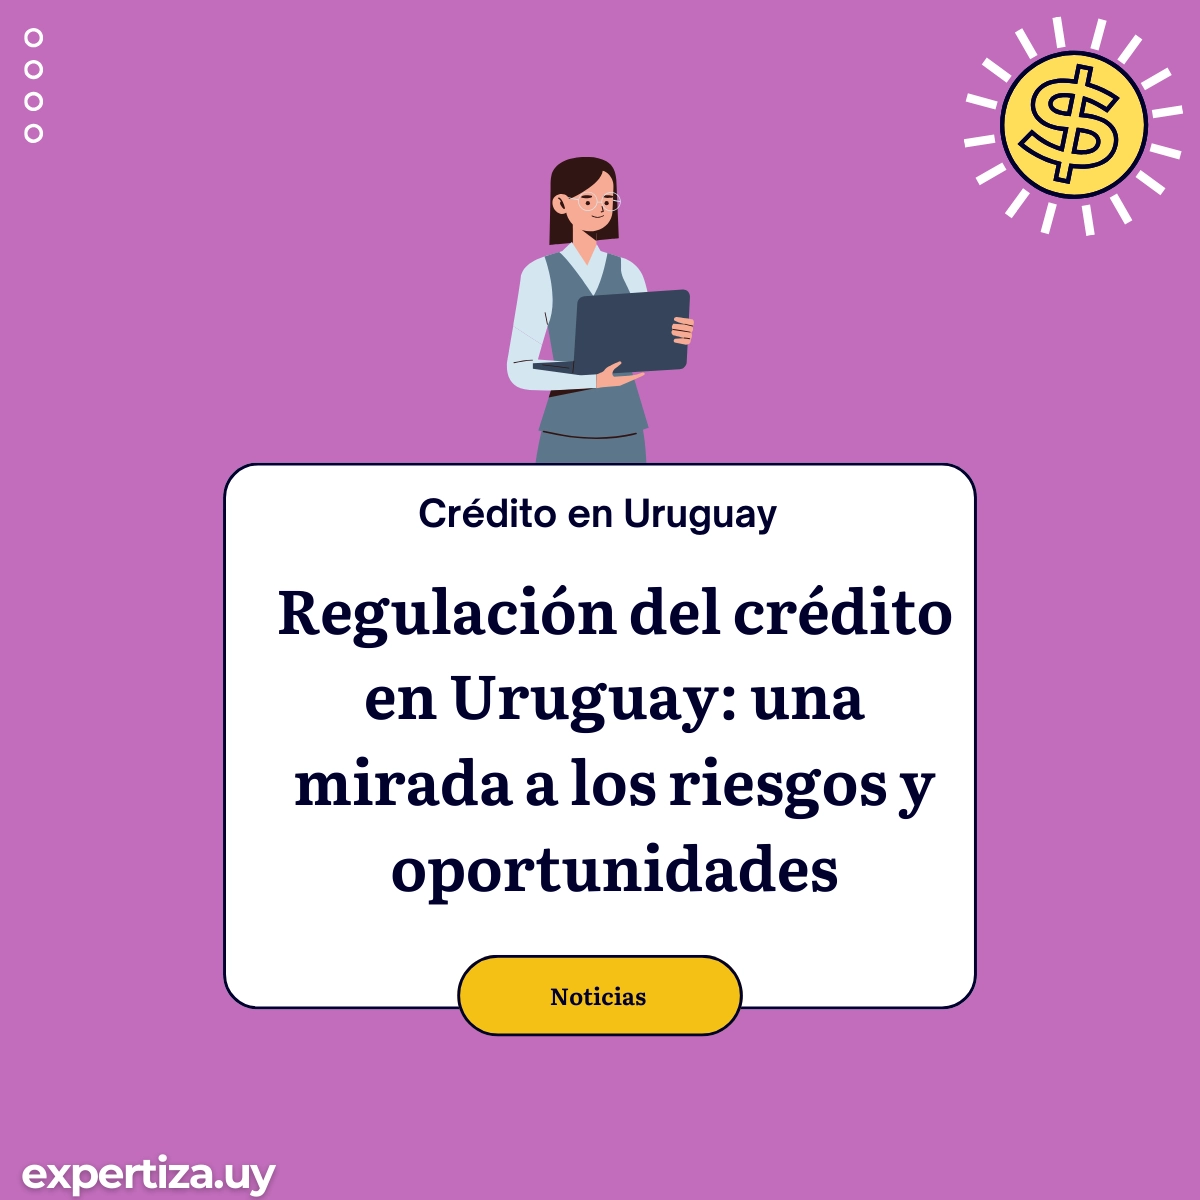 Regulación del crédito en Uruguay.